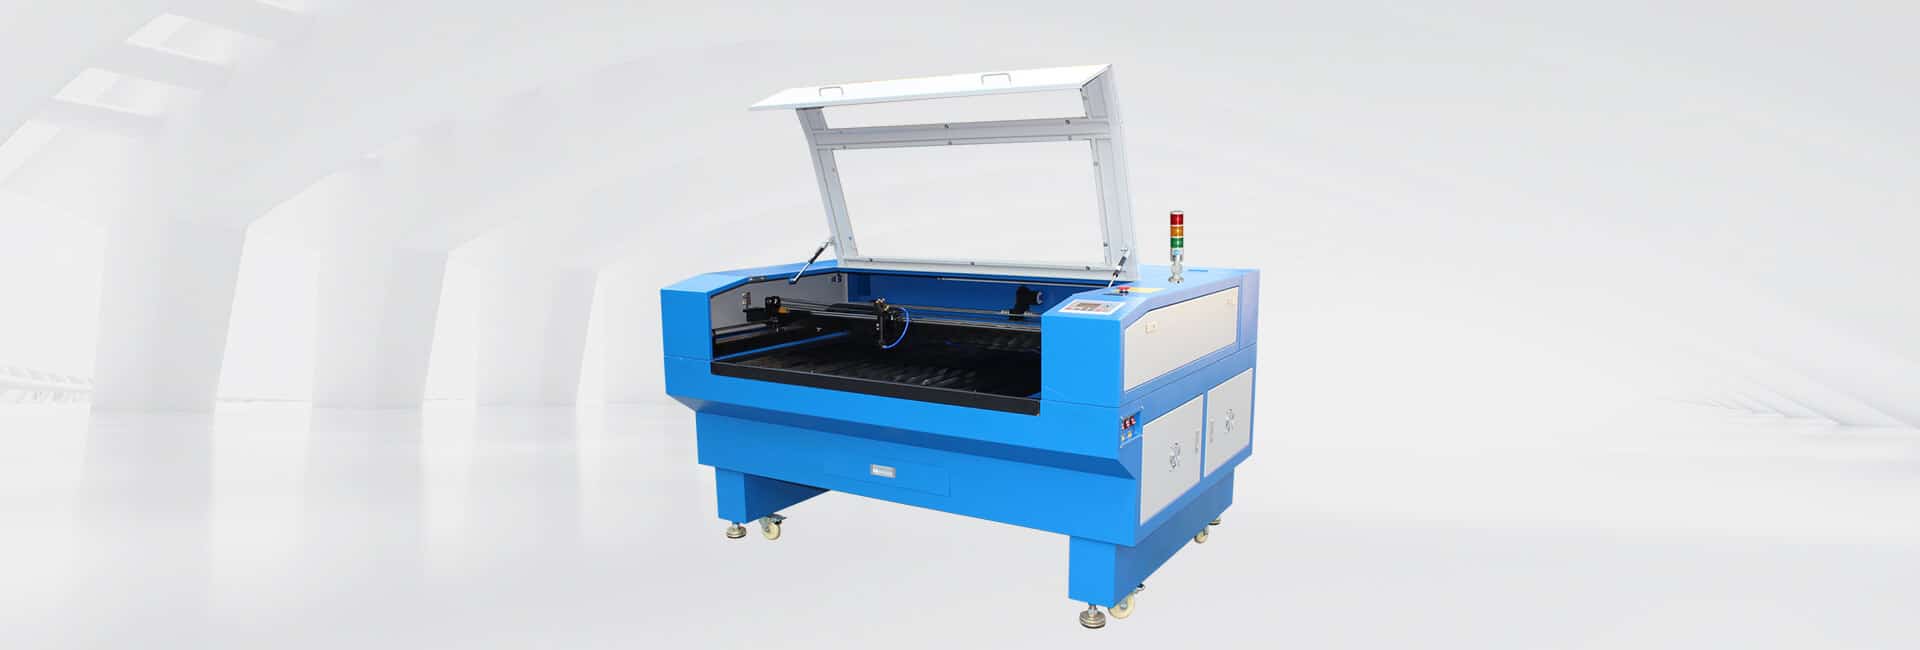 laser cutting machine 1390 banner